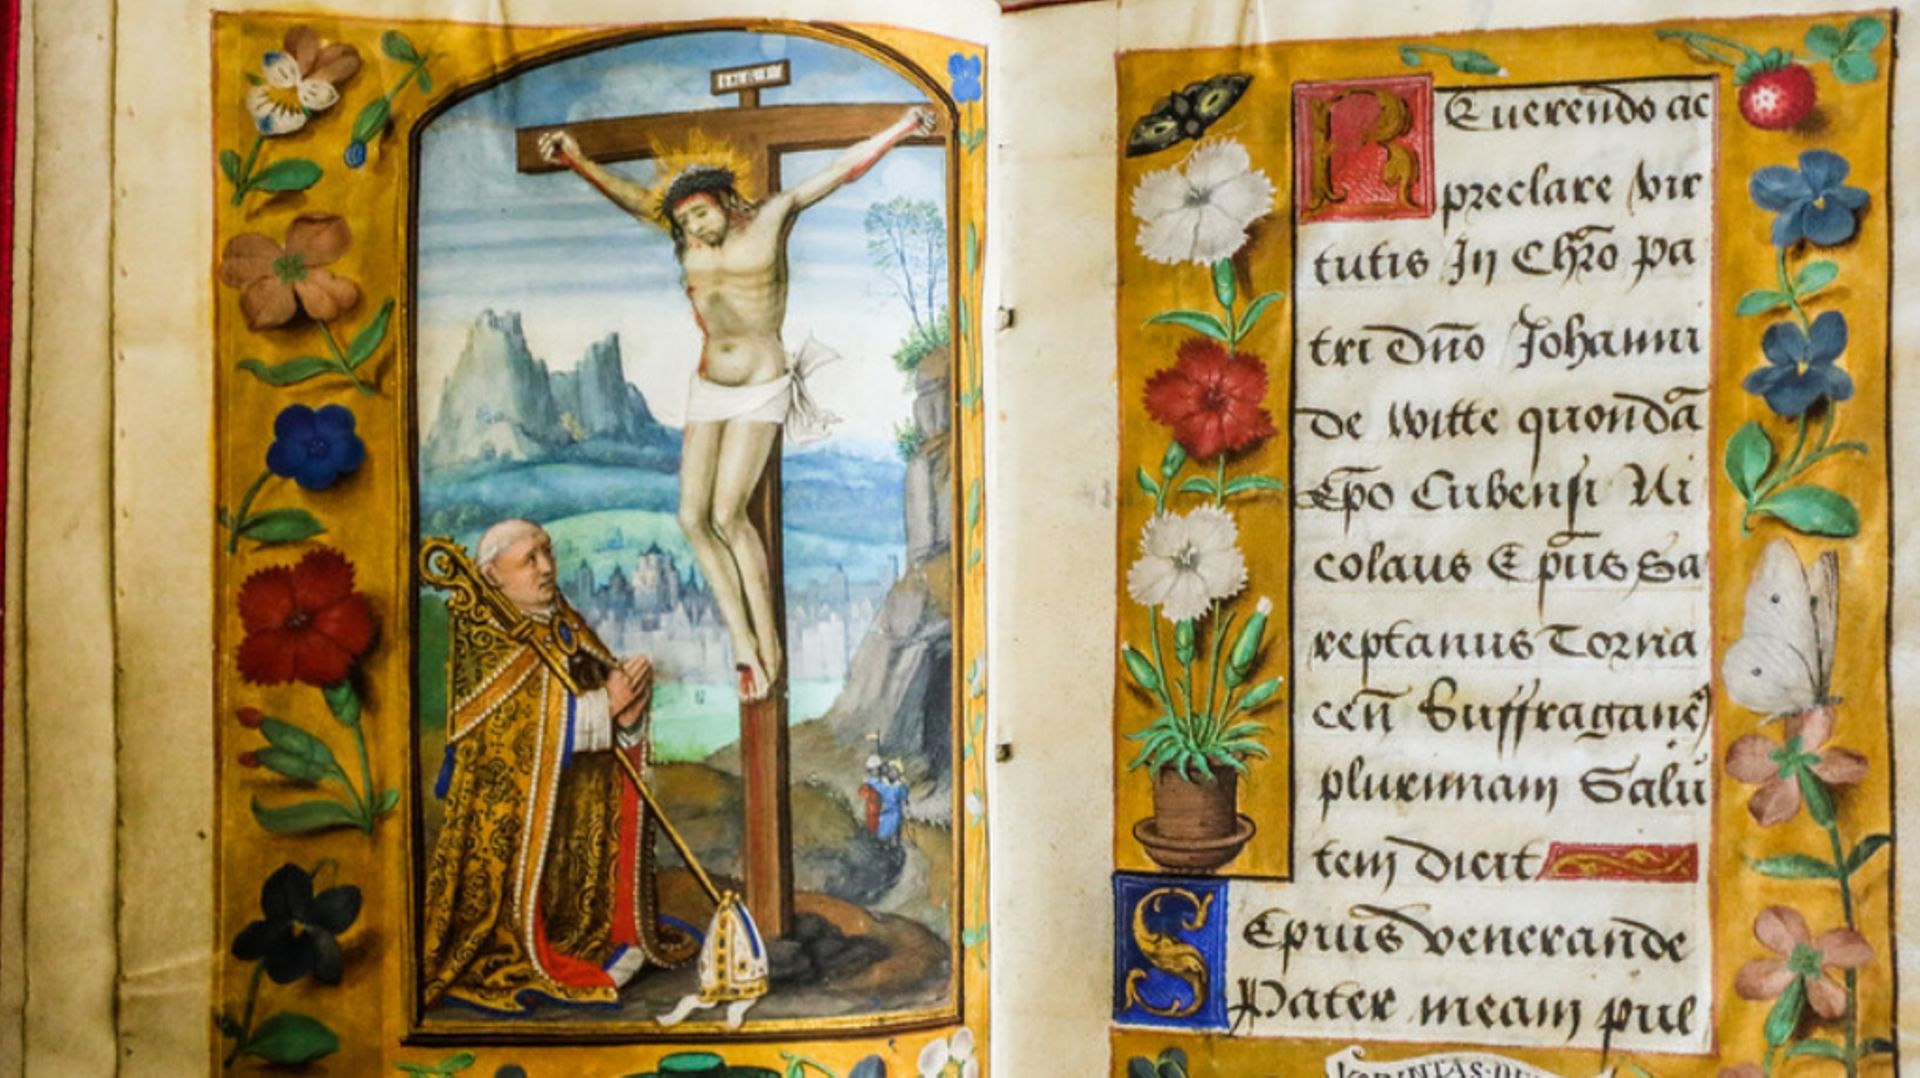 Musea Brugge et la Bibliothèque publique de Bruges, ont acquis de concert un manuscrit datant du 16e siècle traitant de liturgie funéraire épiscopale.